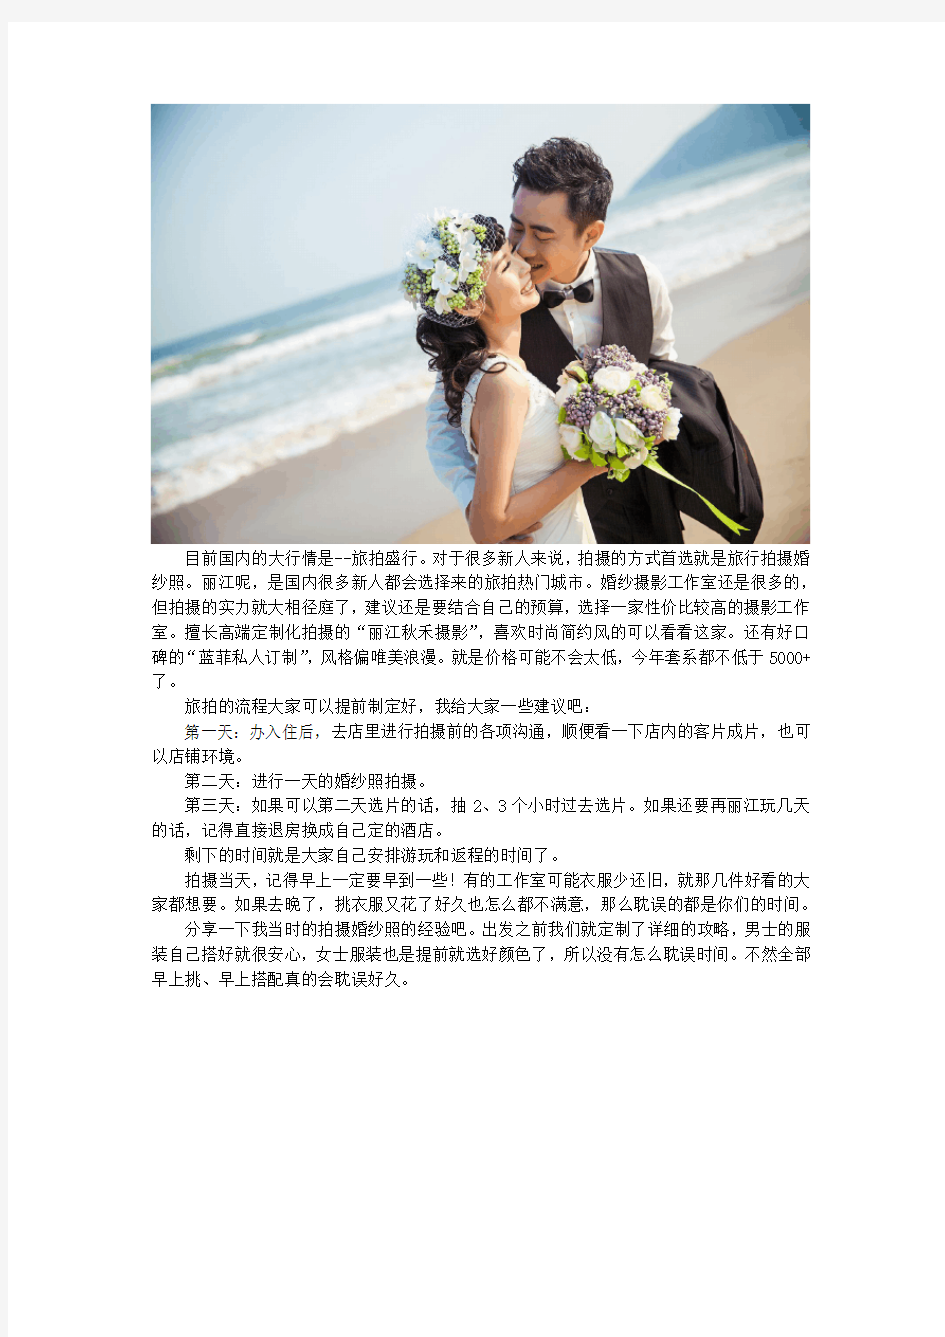 丽江的婚纱摄影哪家比较好